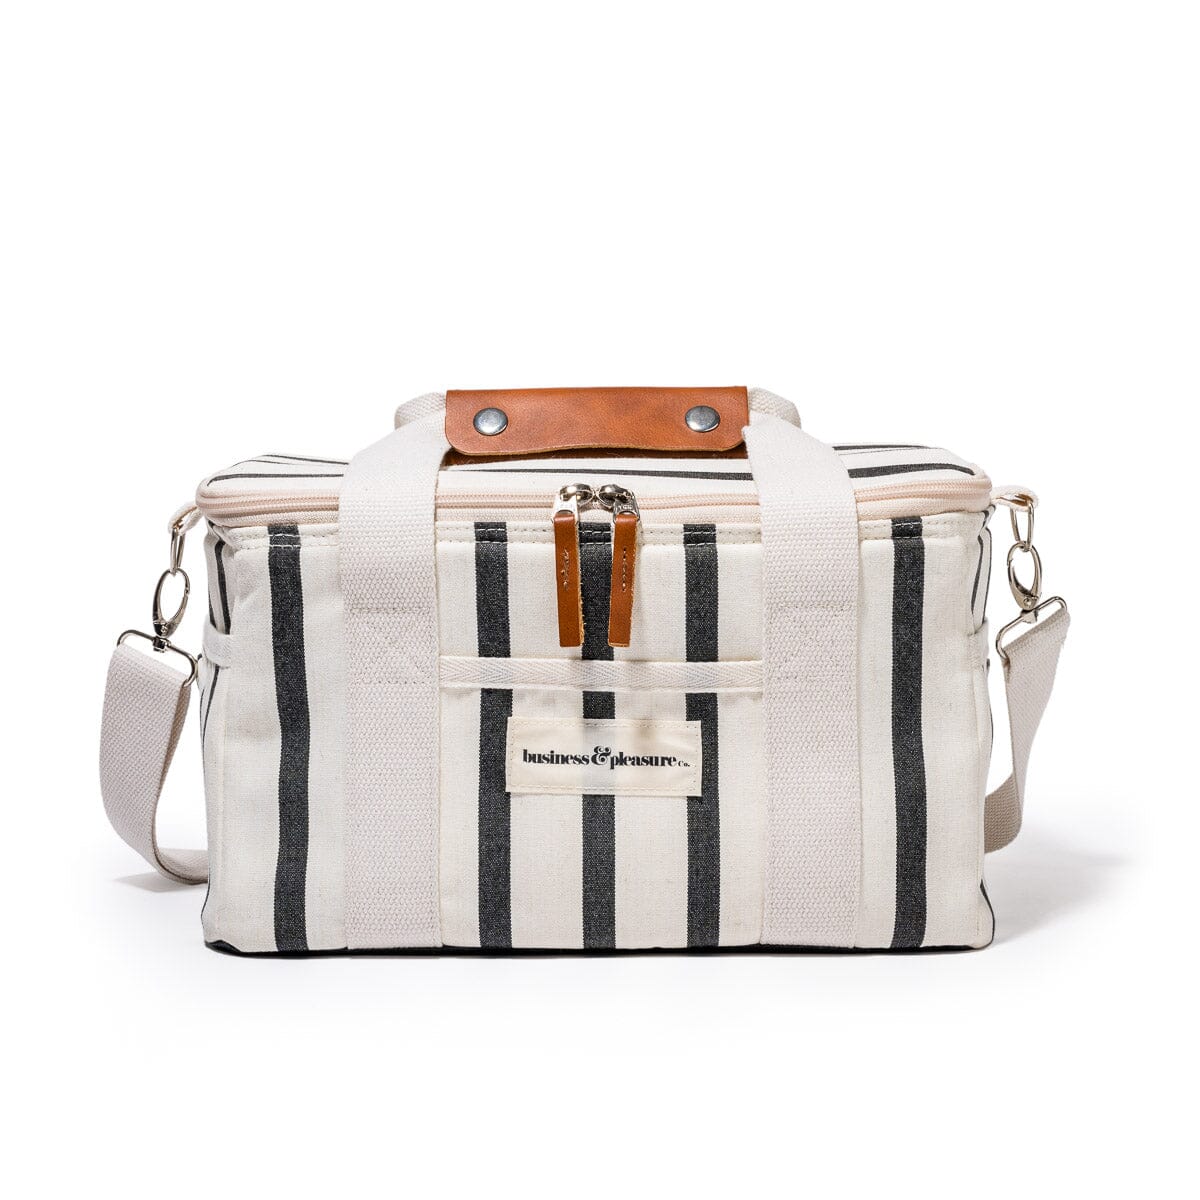 The Premium Cooler Bag - Monaco Black Stripe Premium Cooler Business & Pleasure Co Aus 